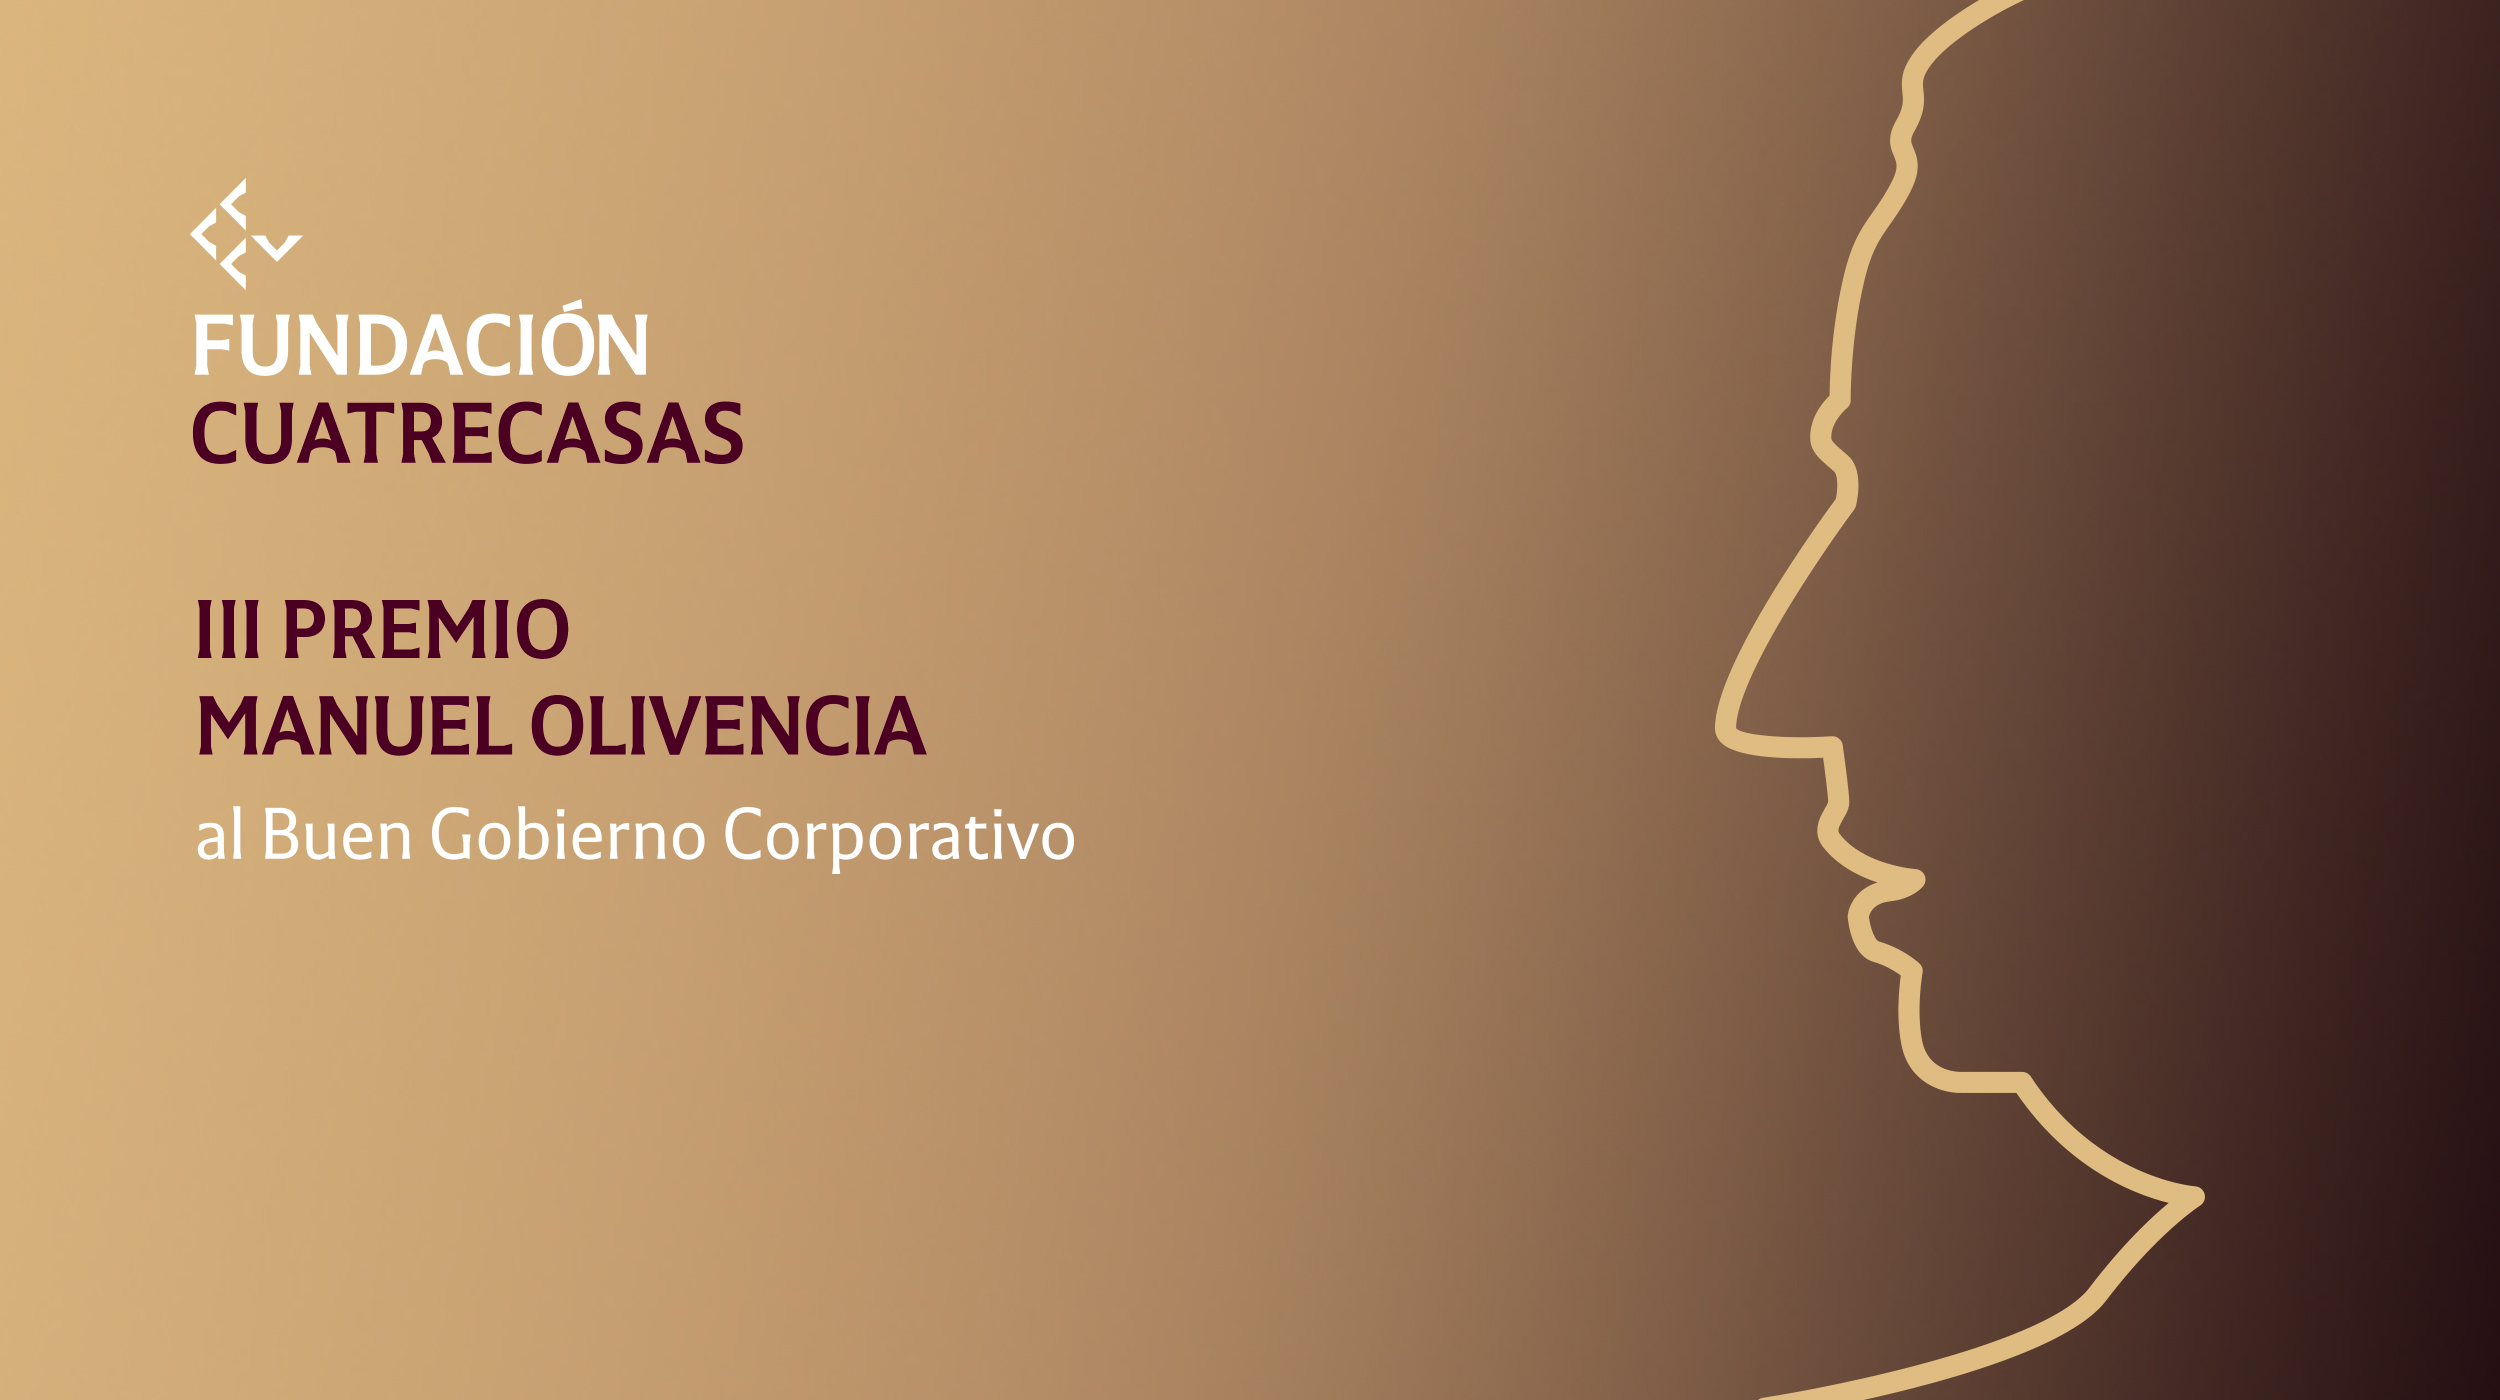 La Fundación Cuatrecasas convoca la III edición del Premio Manuel Olivencia para reconocer el buen gobierno en la gestión de la Covid-19